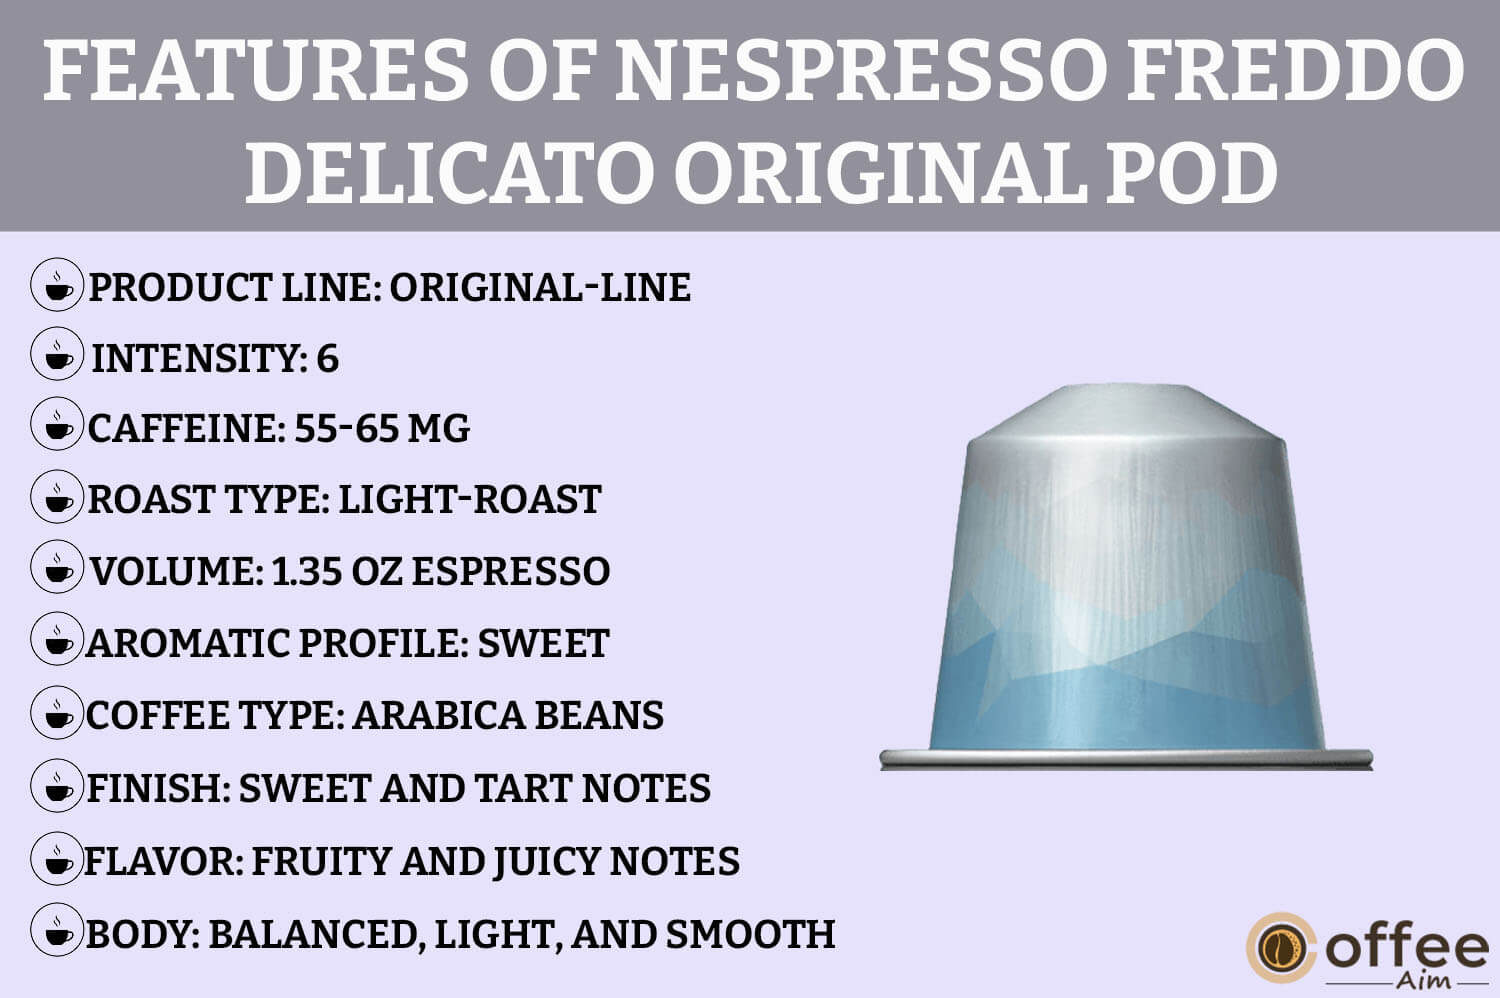 This image showcases the "Features" of the Freddo Delicato Original-Line Pod for the review of Nespresso Freddo Delicato.